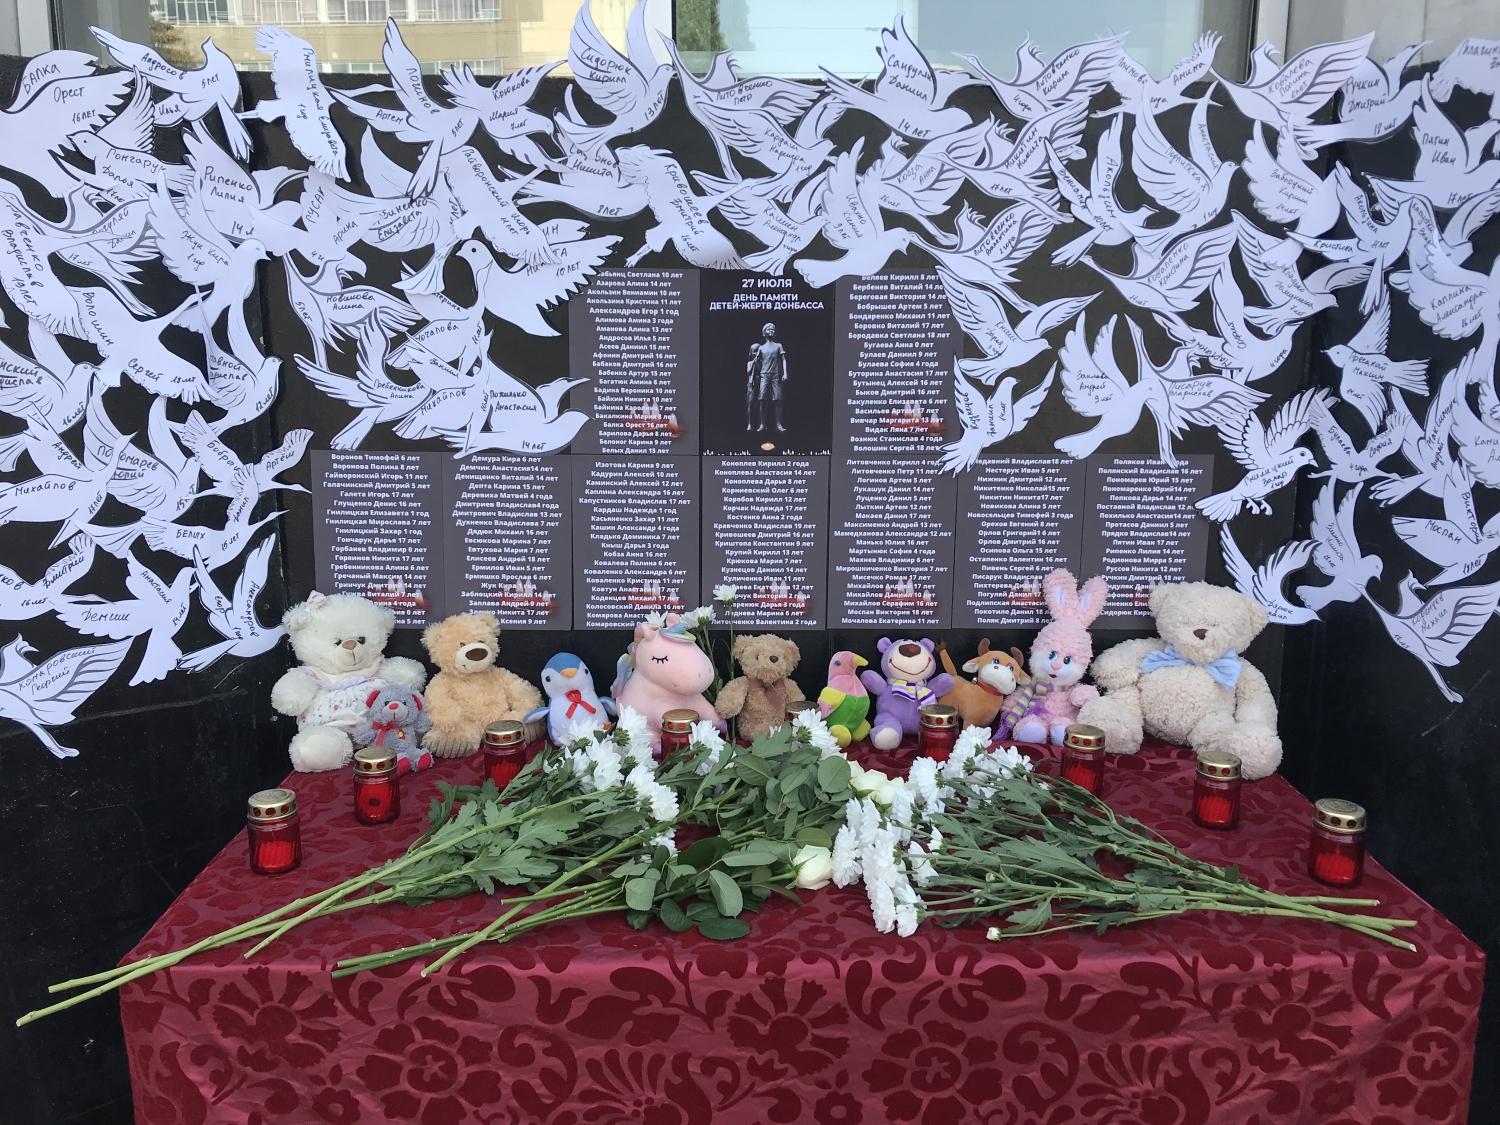 День памяти детей – жертв войны в Донбассе